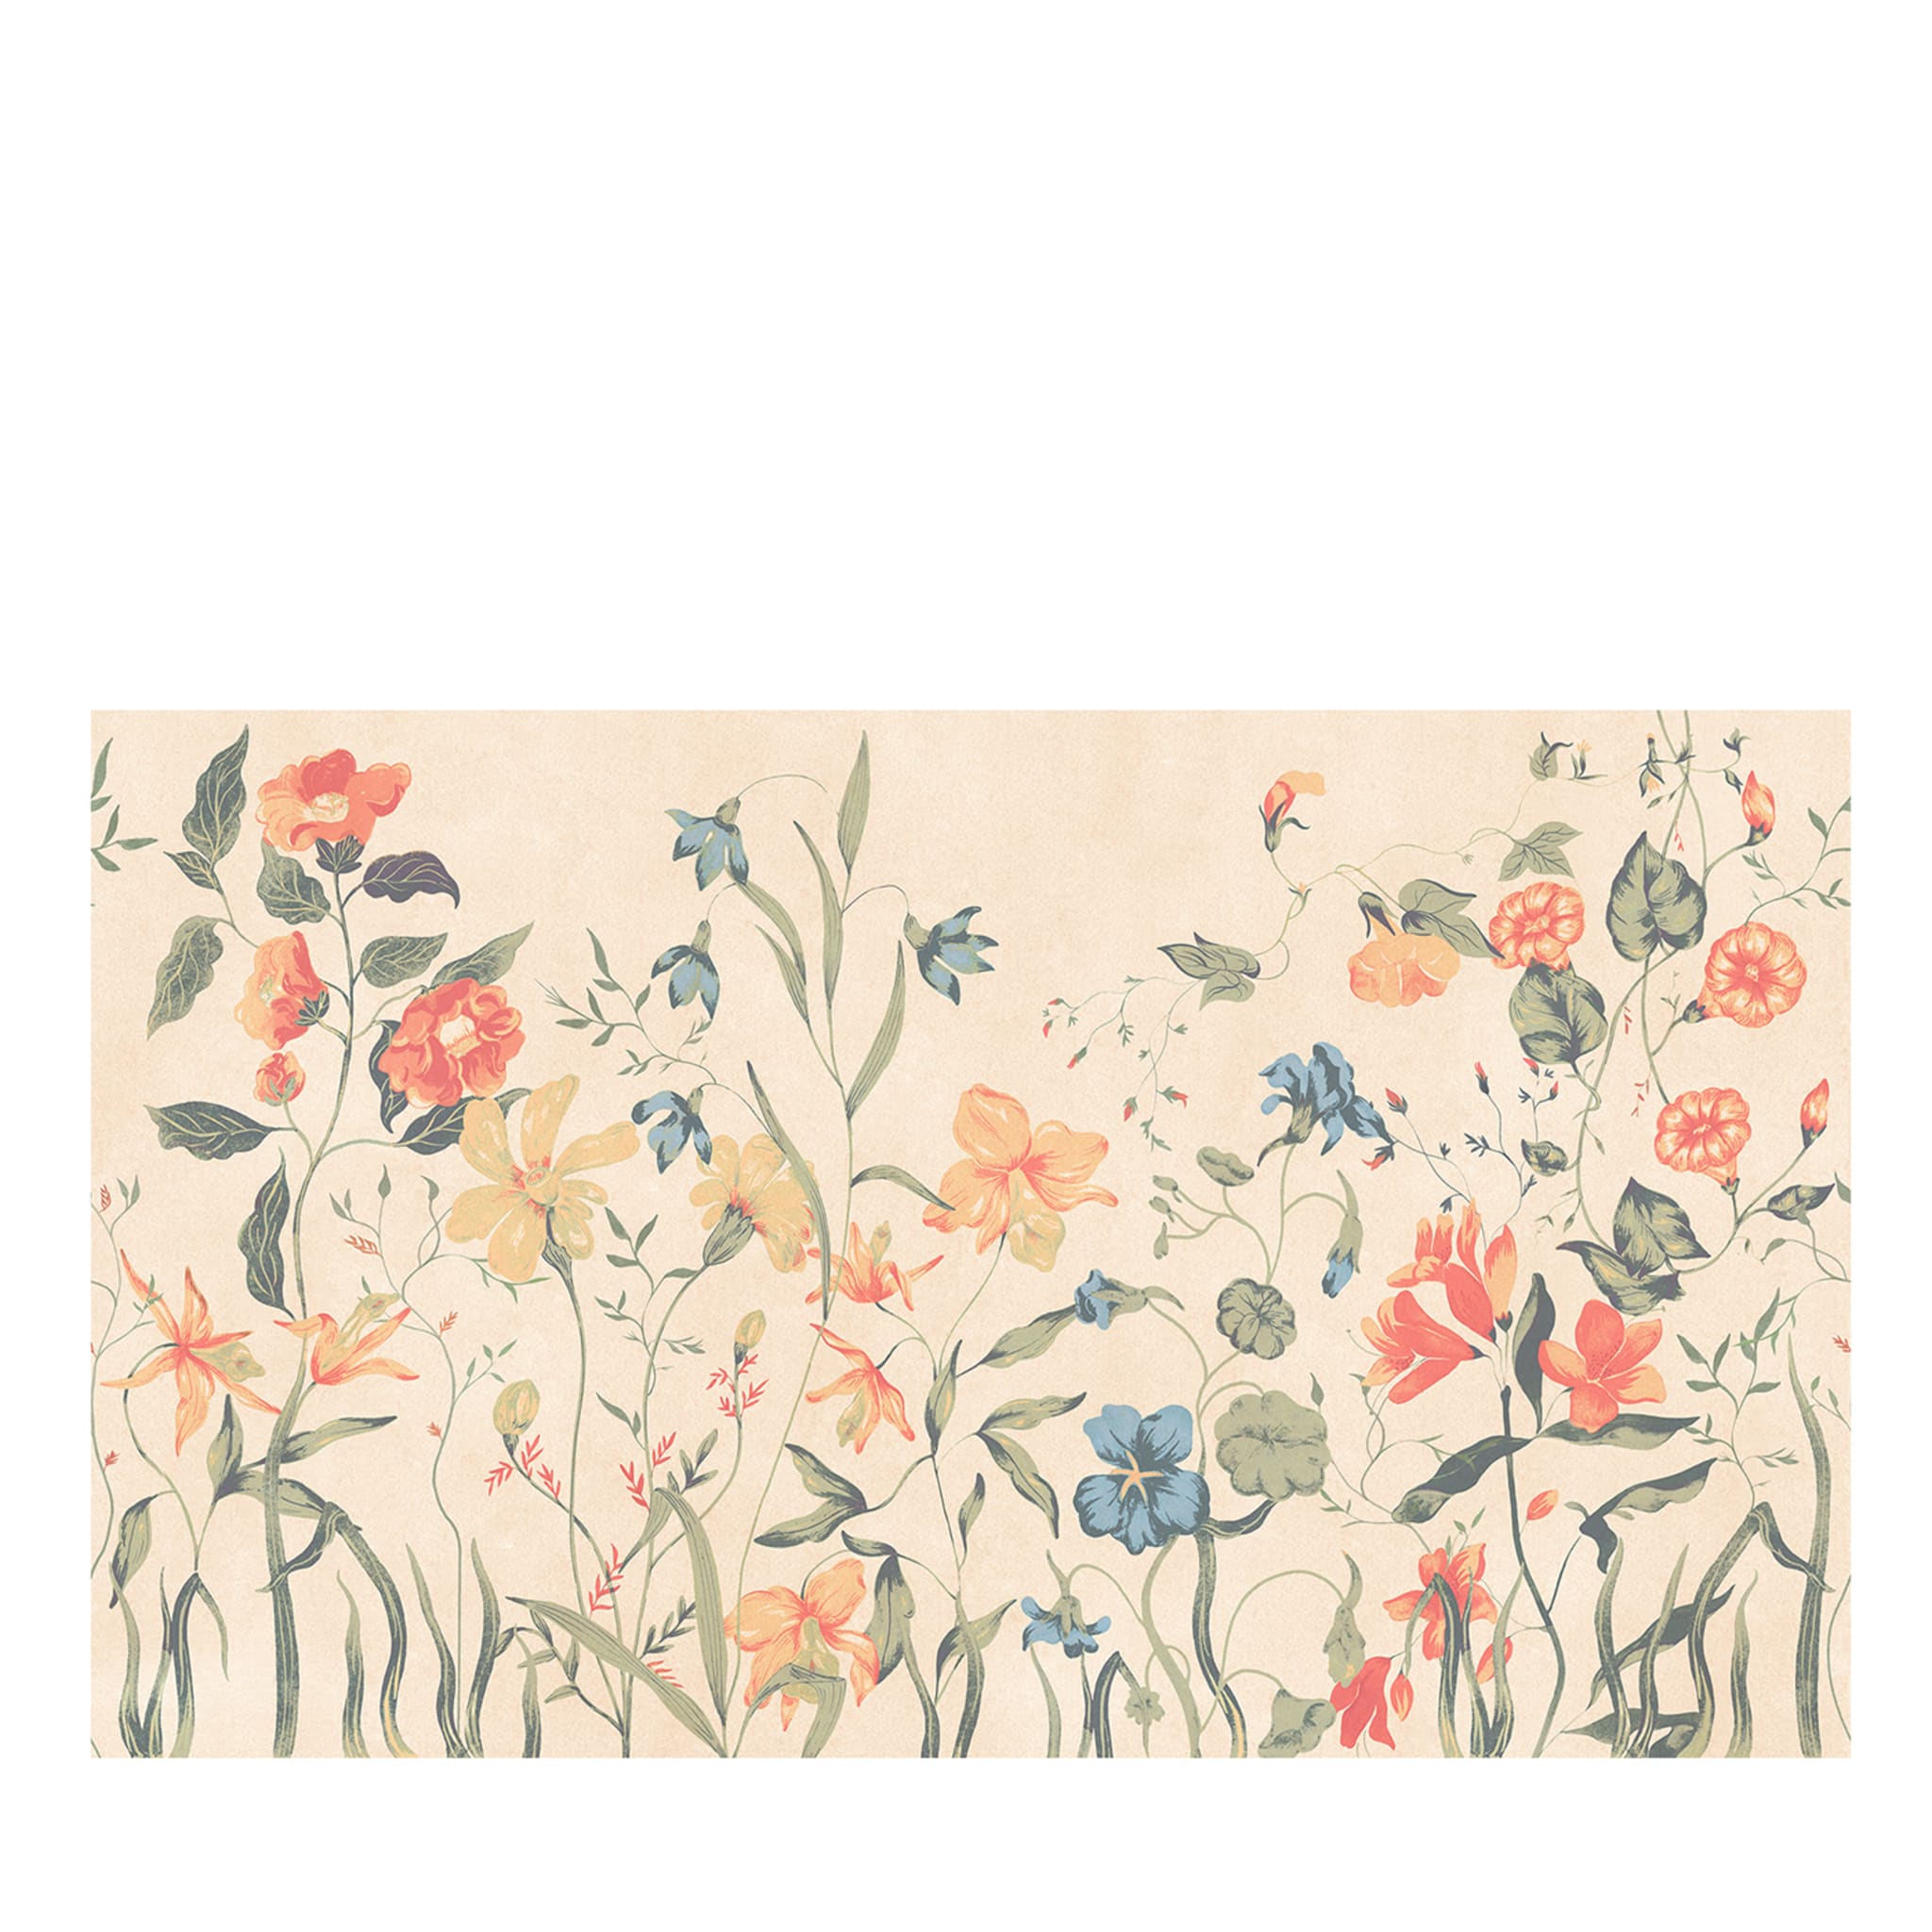 Papel pintado Flora de Sarah Edith nº 2 - Vista principal